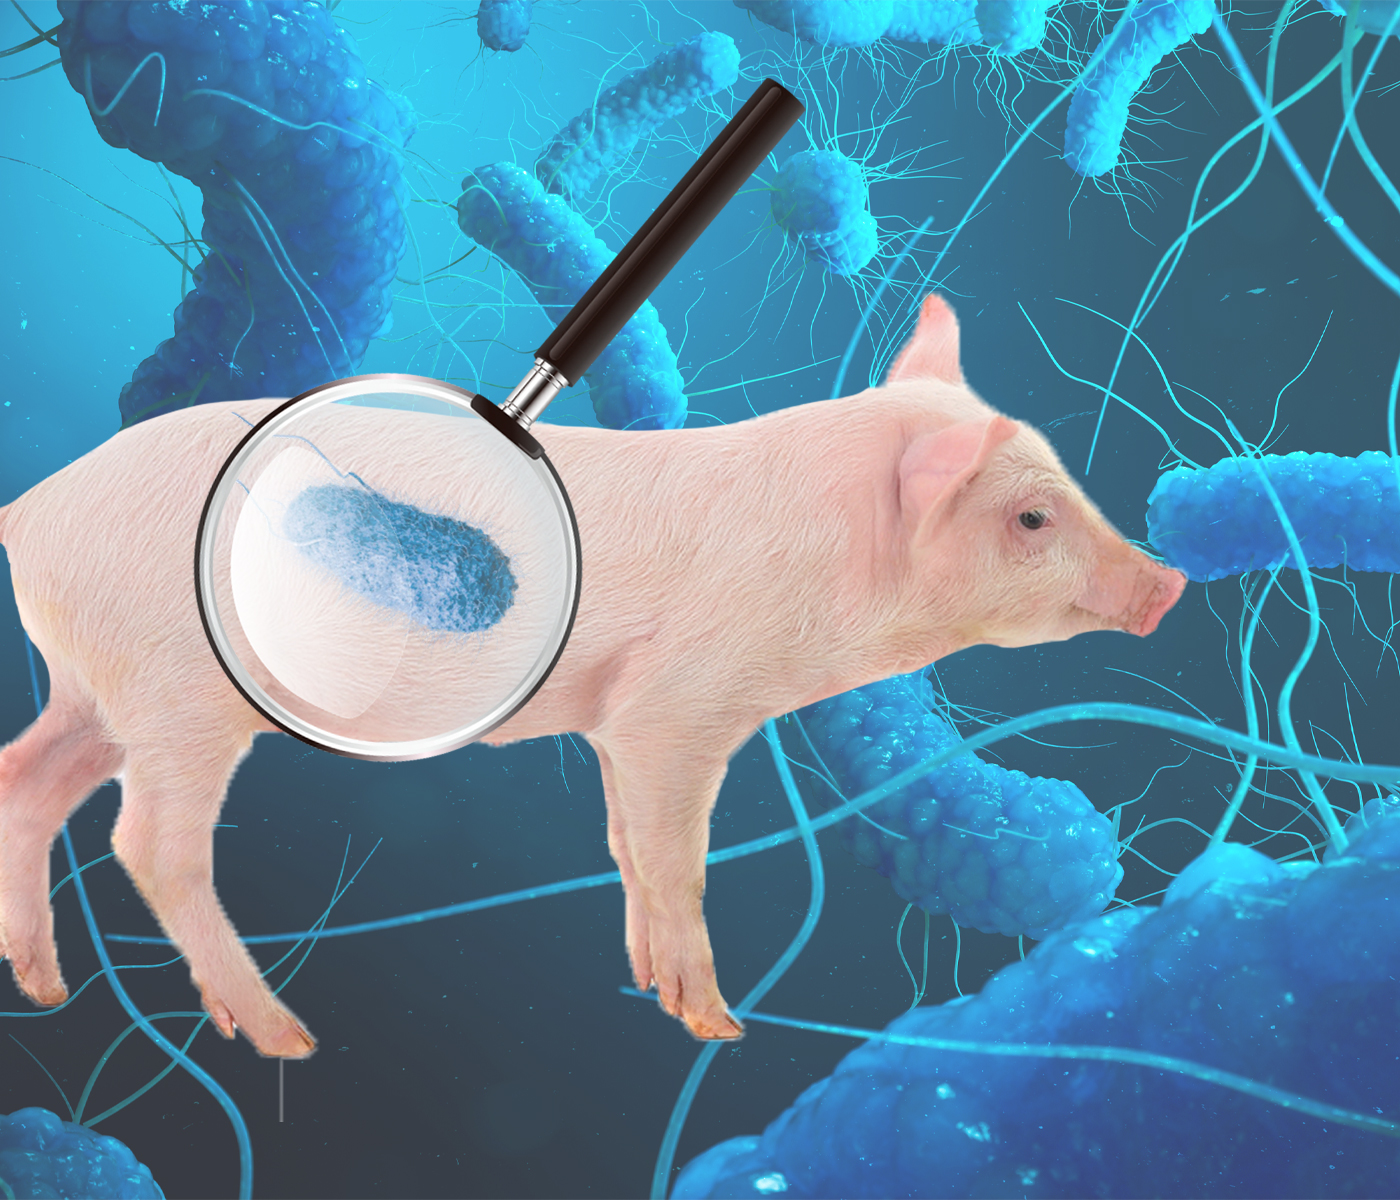 Salmonelosis porcina: la infección en lechones, ¿el eslabón olvidado para su control?